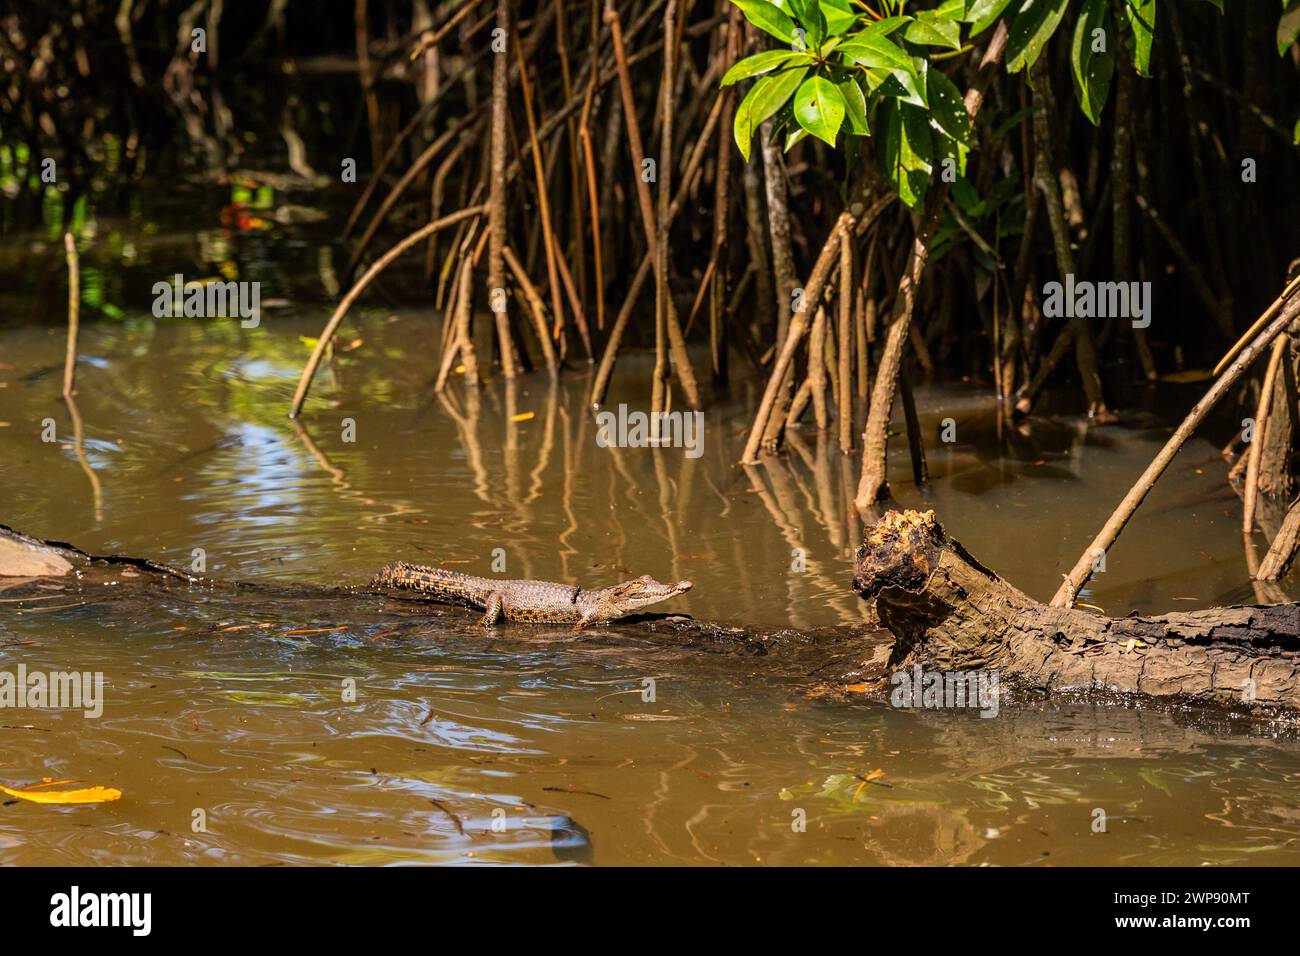 Young crocodile climbing on a log in water of Bentota Ganga river, Sri Lanka. Stock Photo